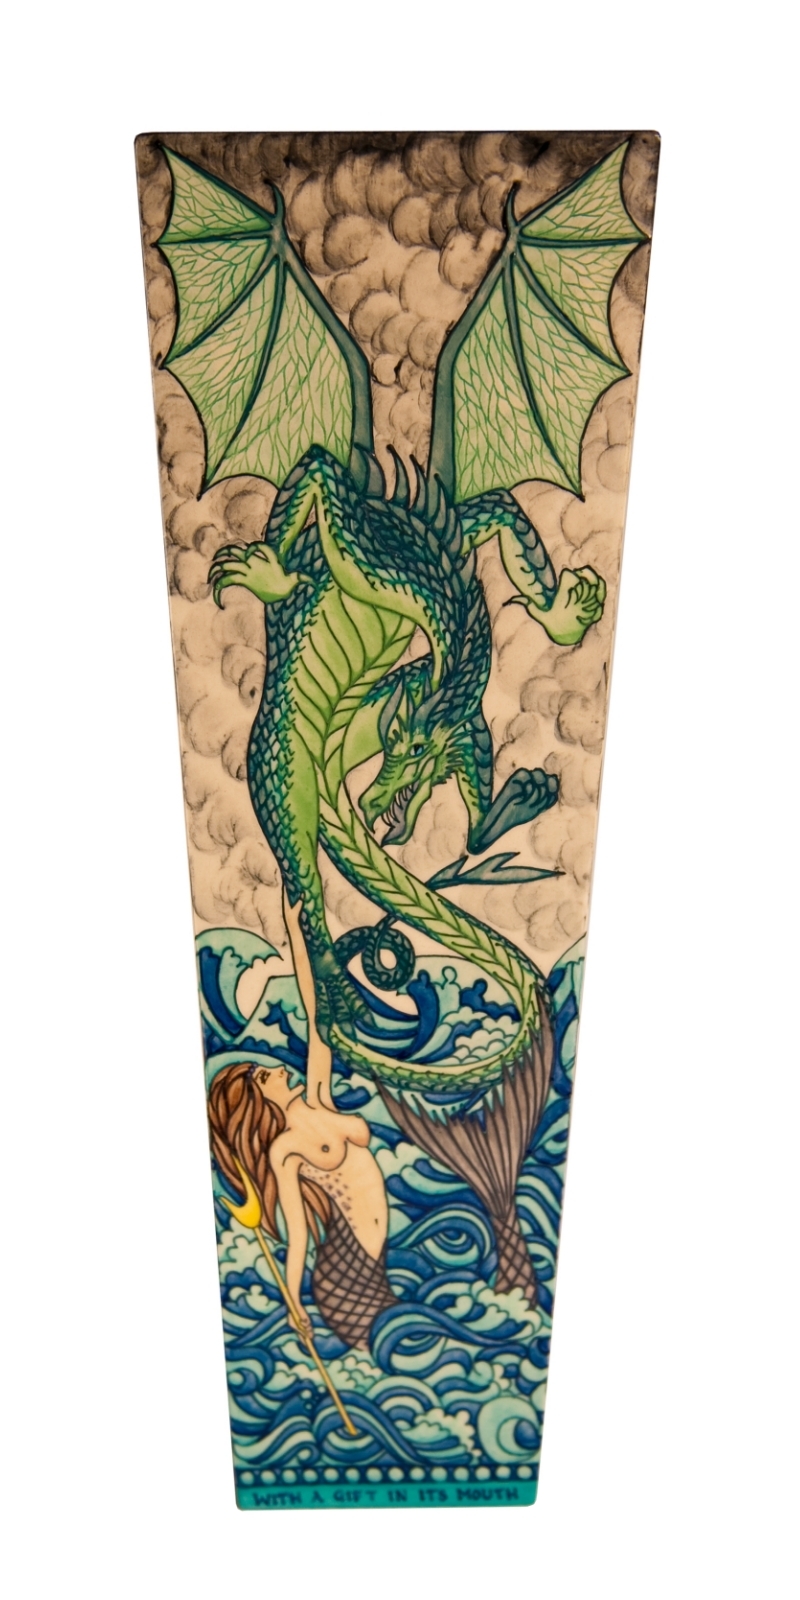 HW designs_Battling Dragon and Mermaid_Enlarged